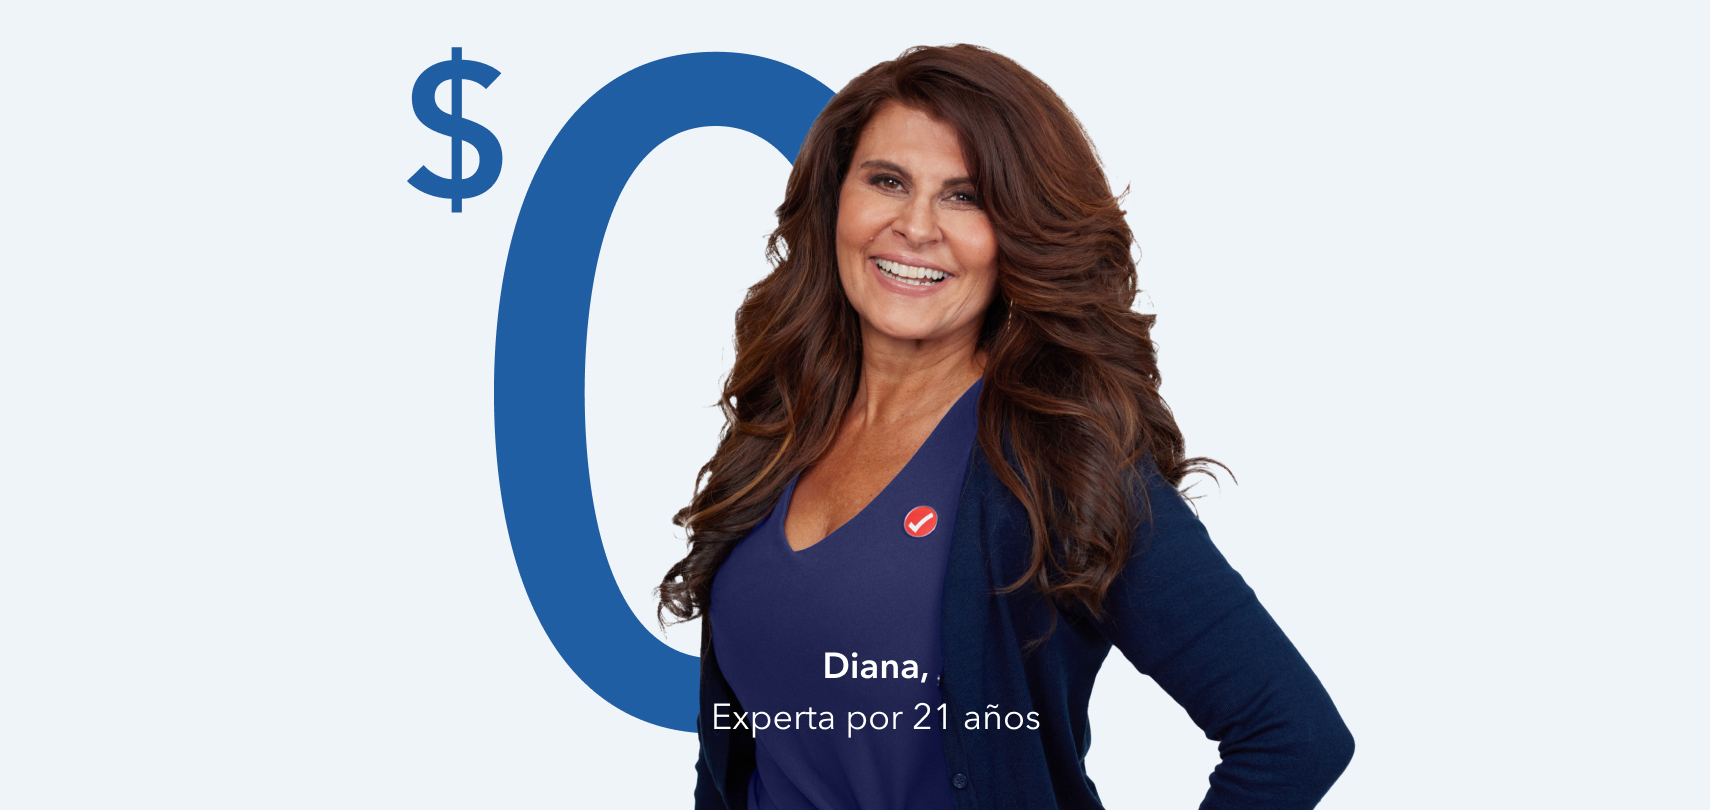 Diana, Experta tributaria bilingüe con 21 años de experiencia enfrente del gráfico de $0